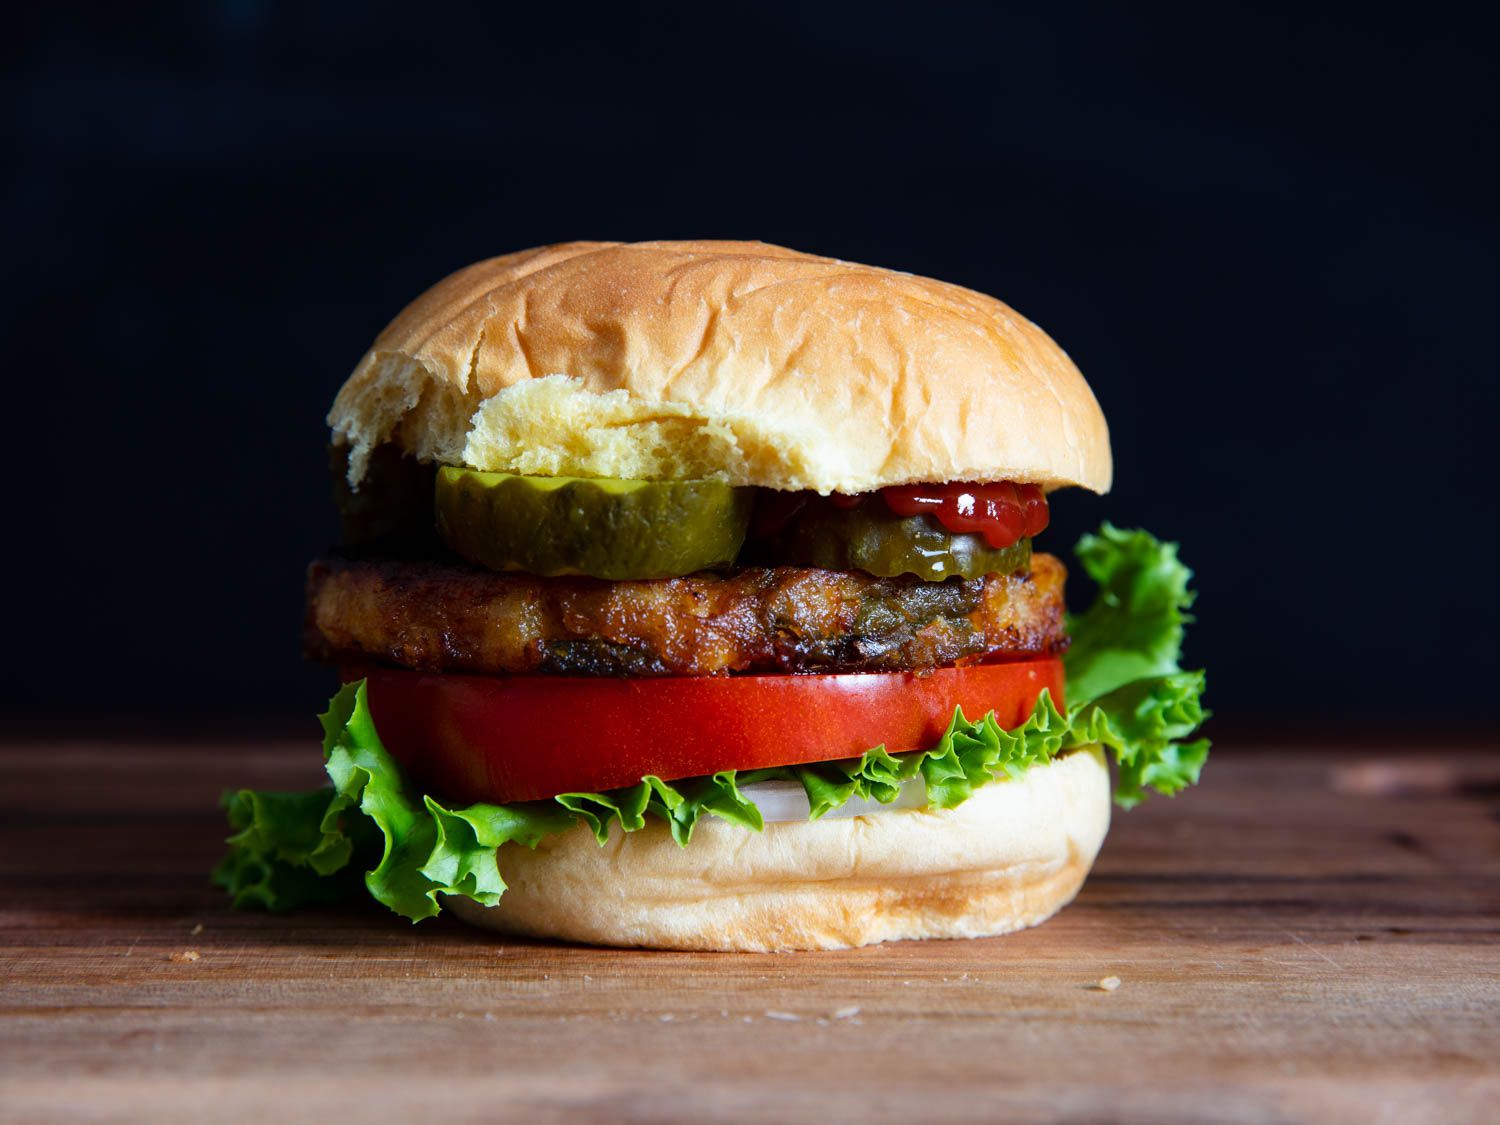 20190730 -素食汉堡味道-测试-维姬-沃斯克-交易员joes素食——马沙拉——英雄